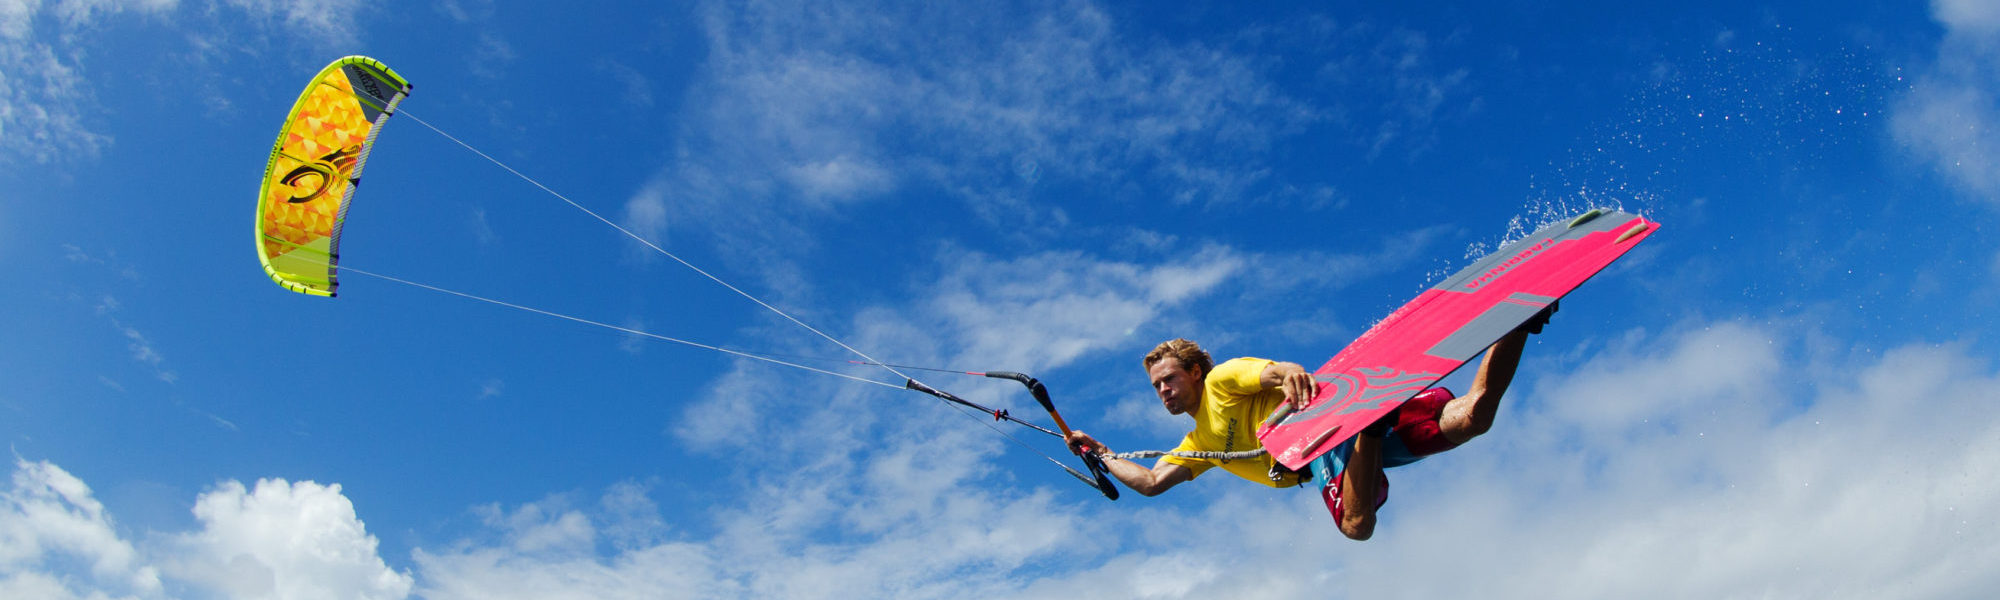 Kitesurfing Chia, Sardinia